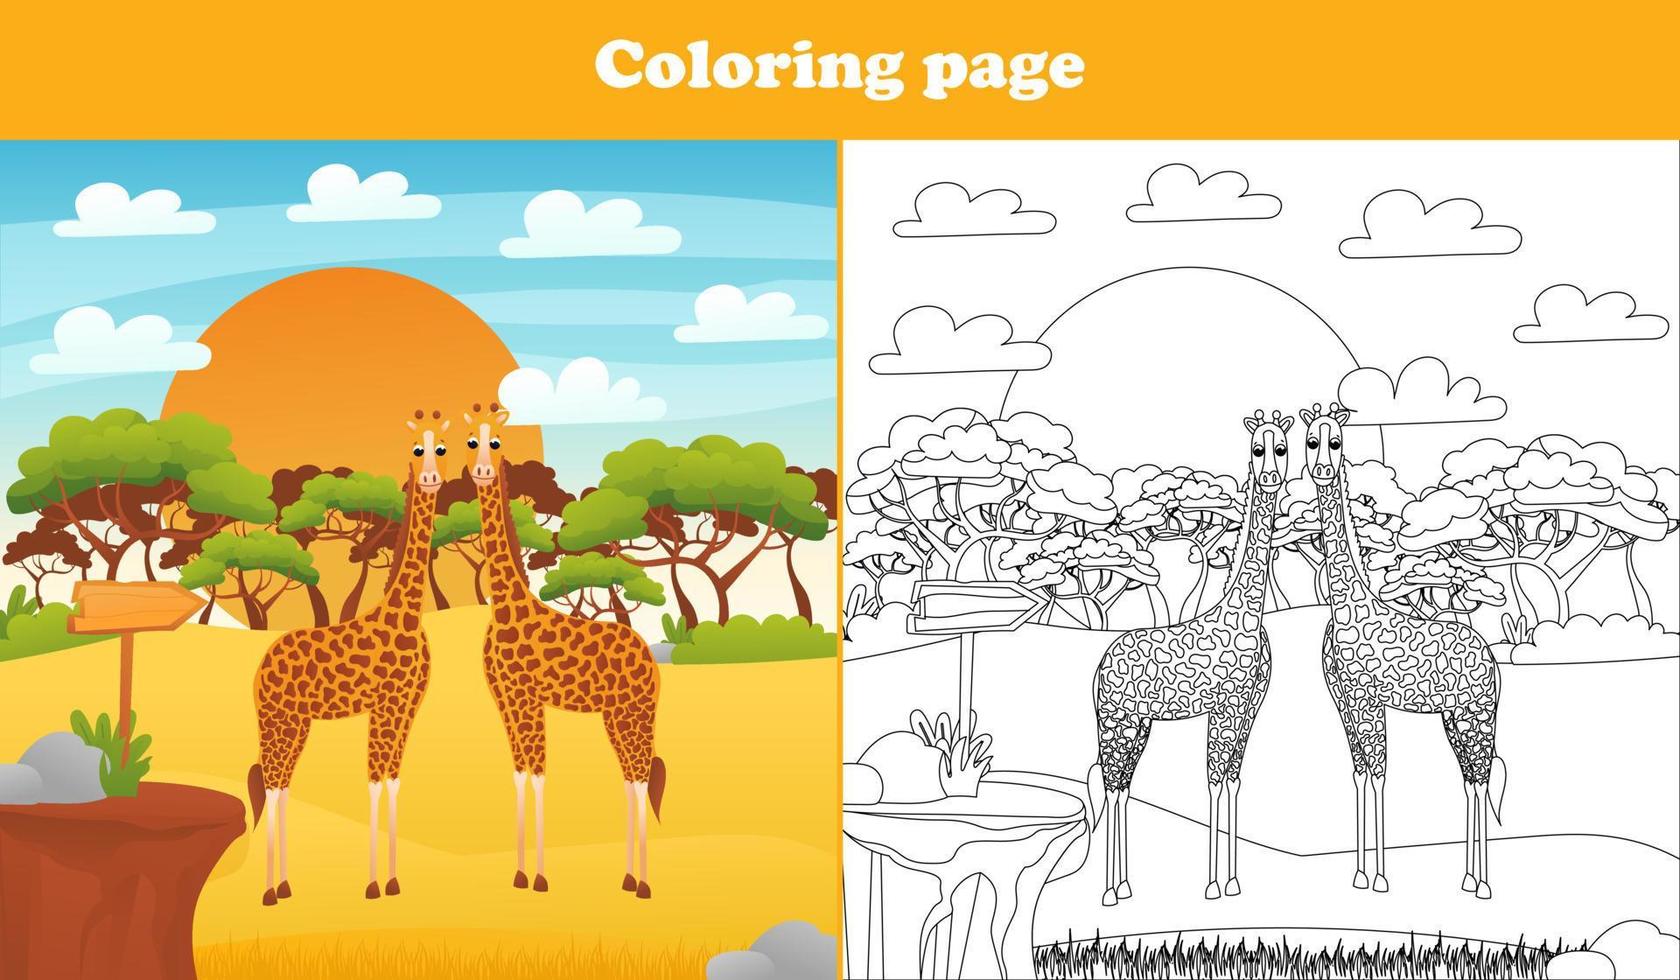 paisagem do deserto de safári para crianças com personagens de animais fofos - girafas, página para colorir para livros infantis, planilha imprimível em estilo de desenho animado para escola, tema de animais selvagens vetor